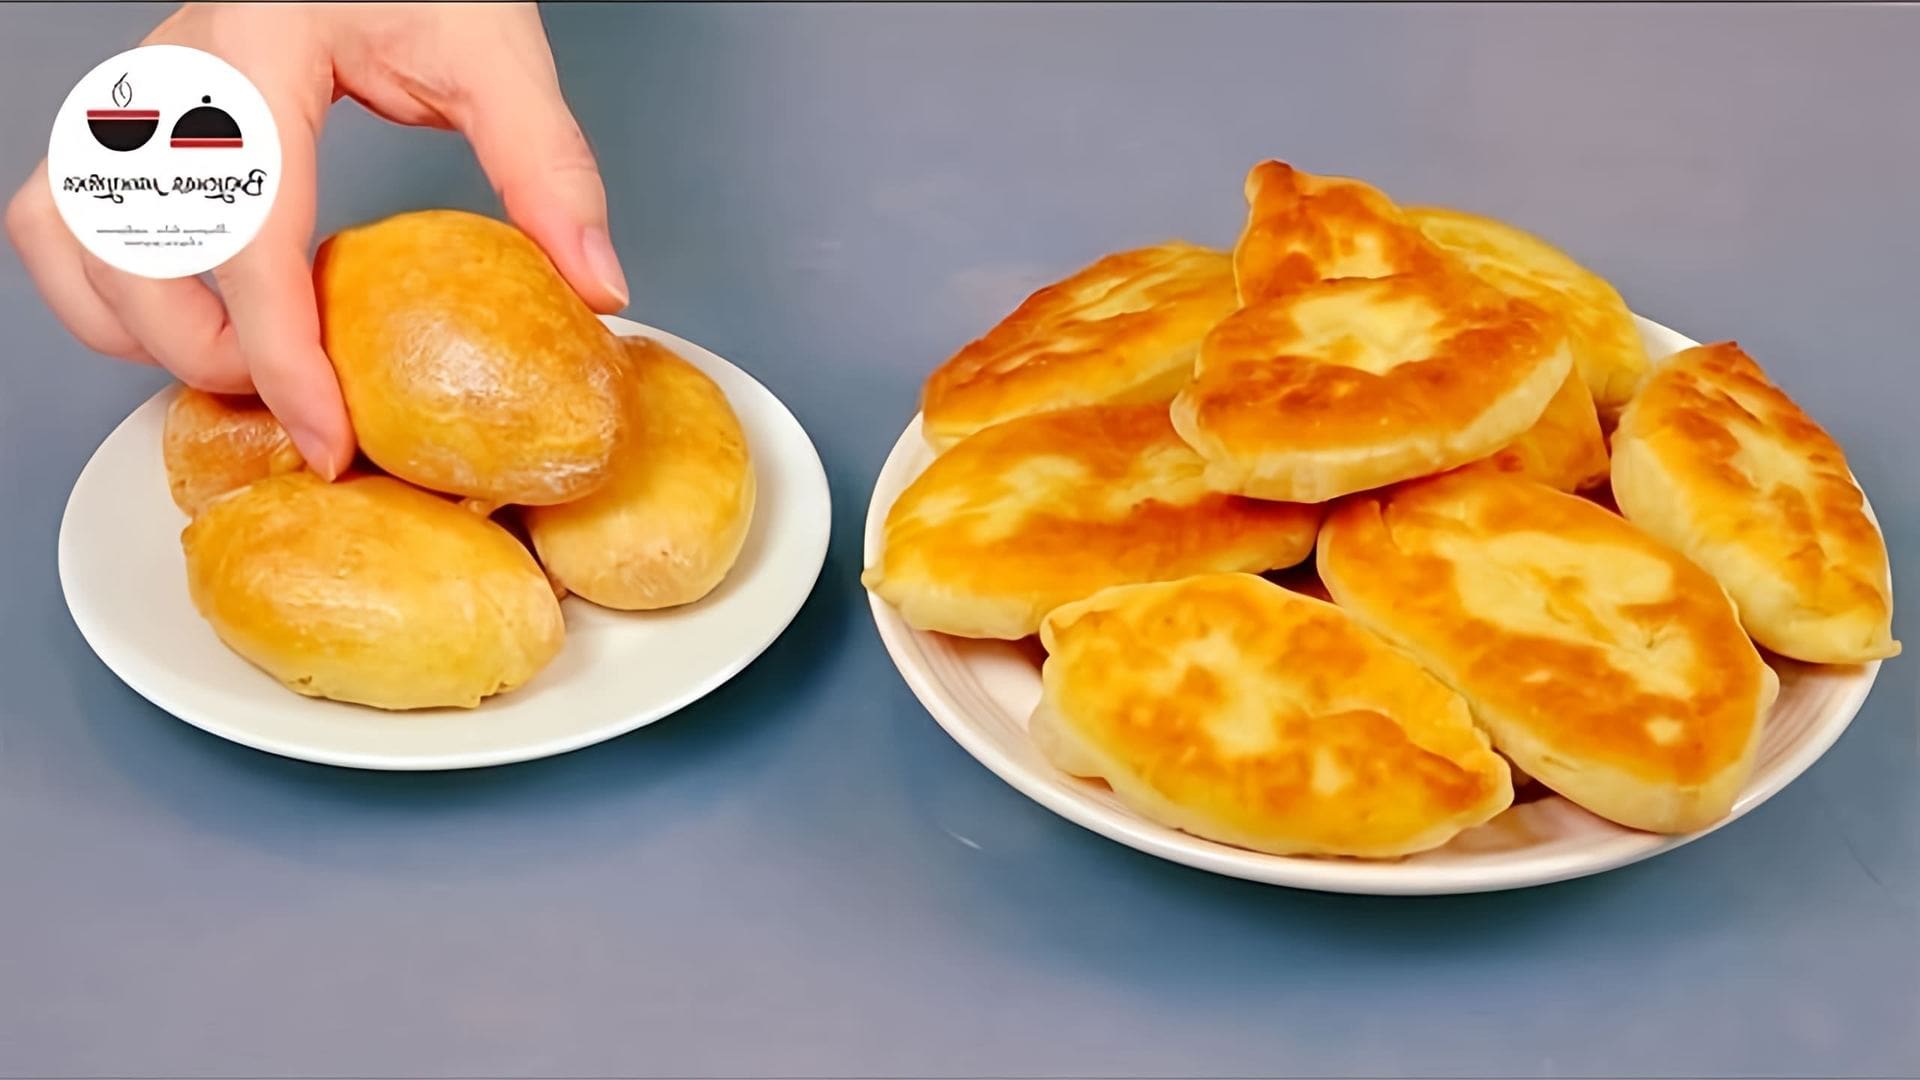 В этом видео демонстрируется процесс приготовления пирожков с необычной начинкой